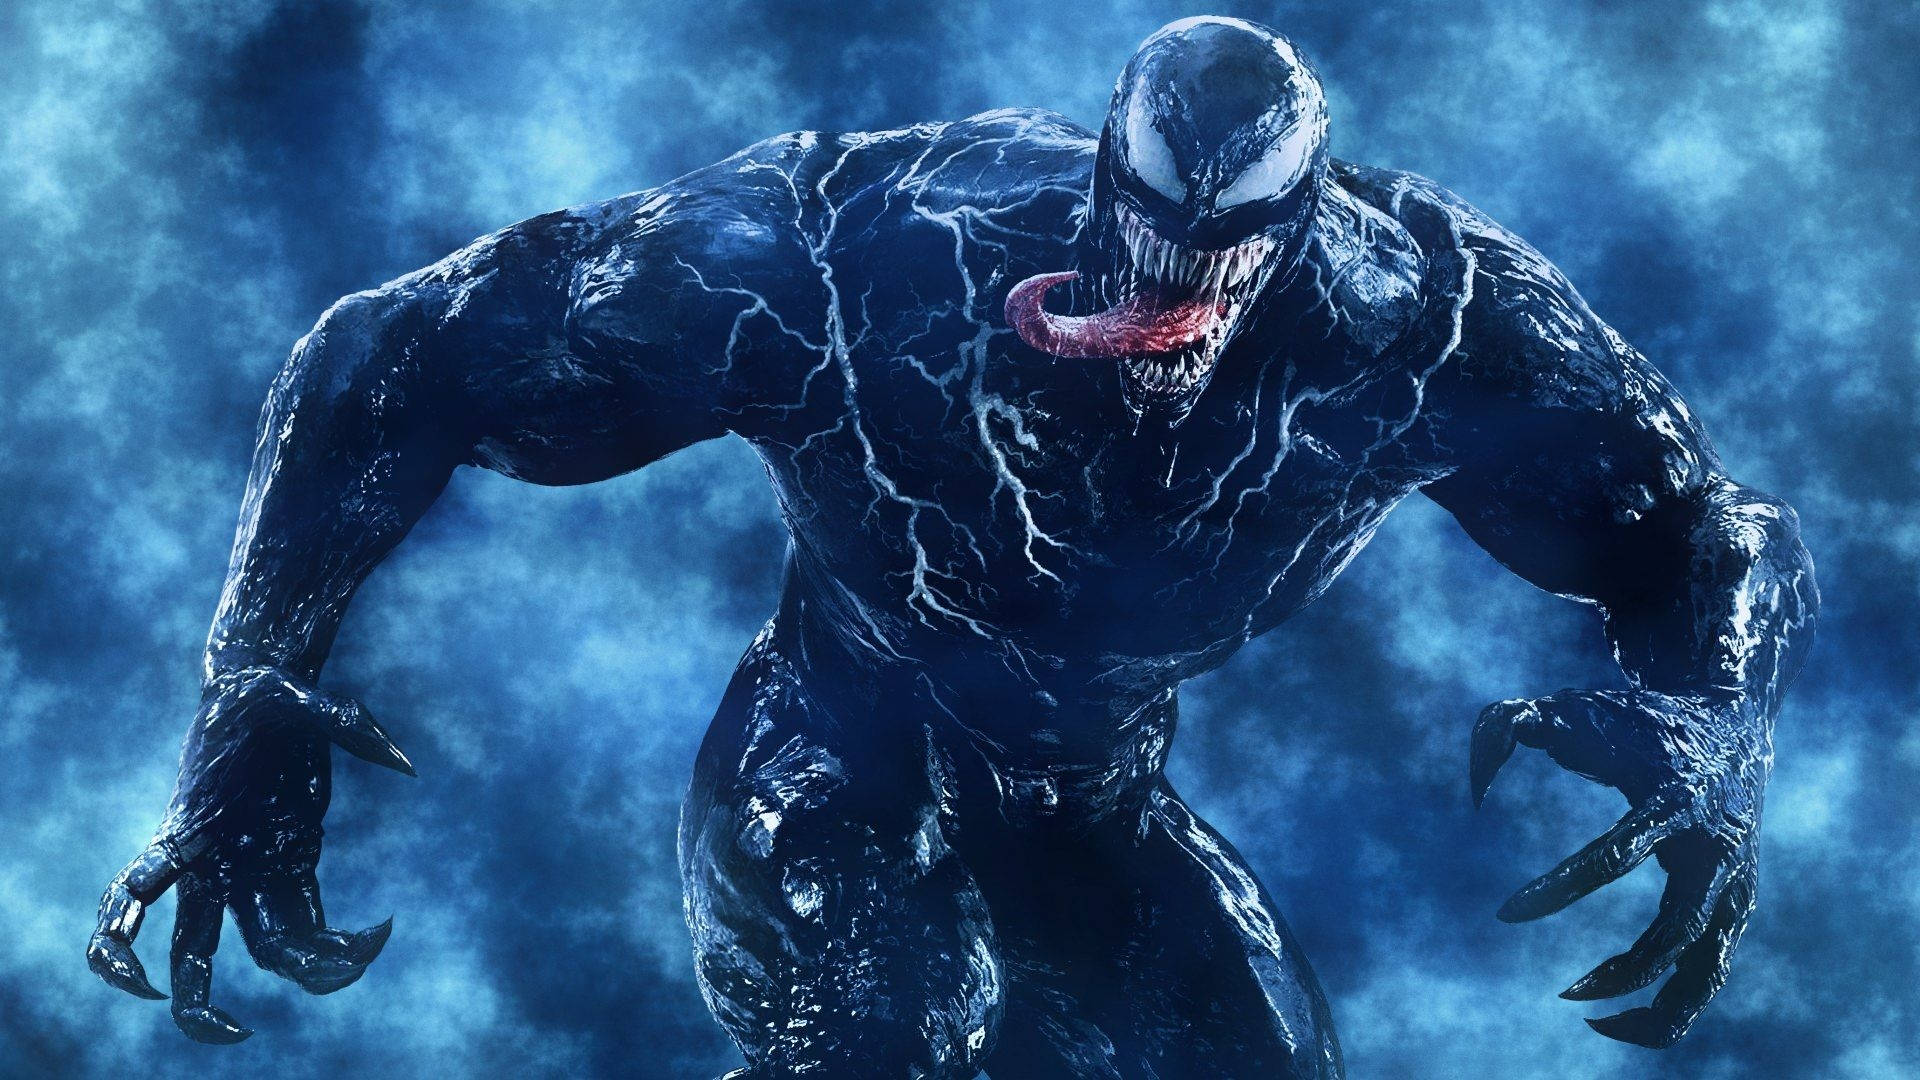 Venom Movie The Antihero Background